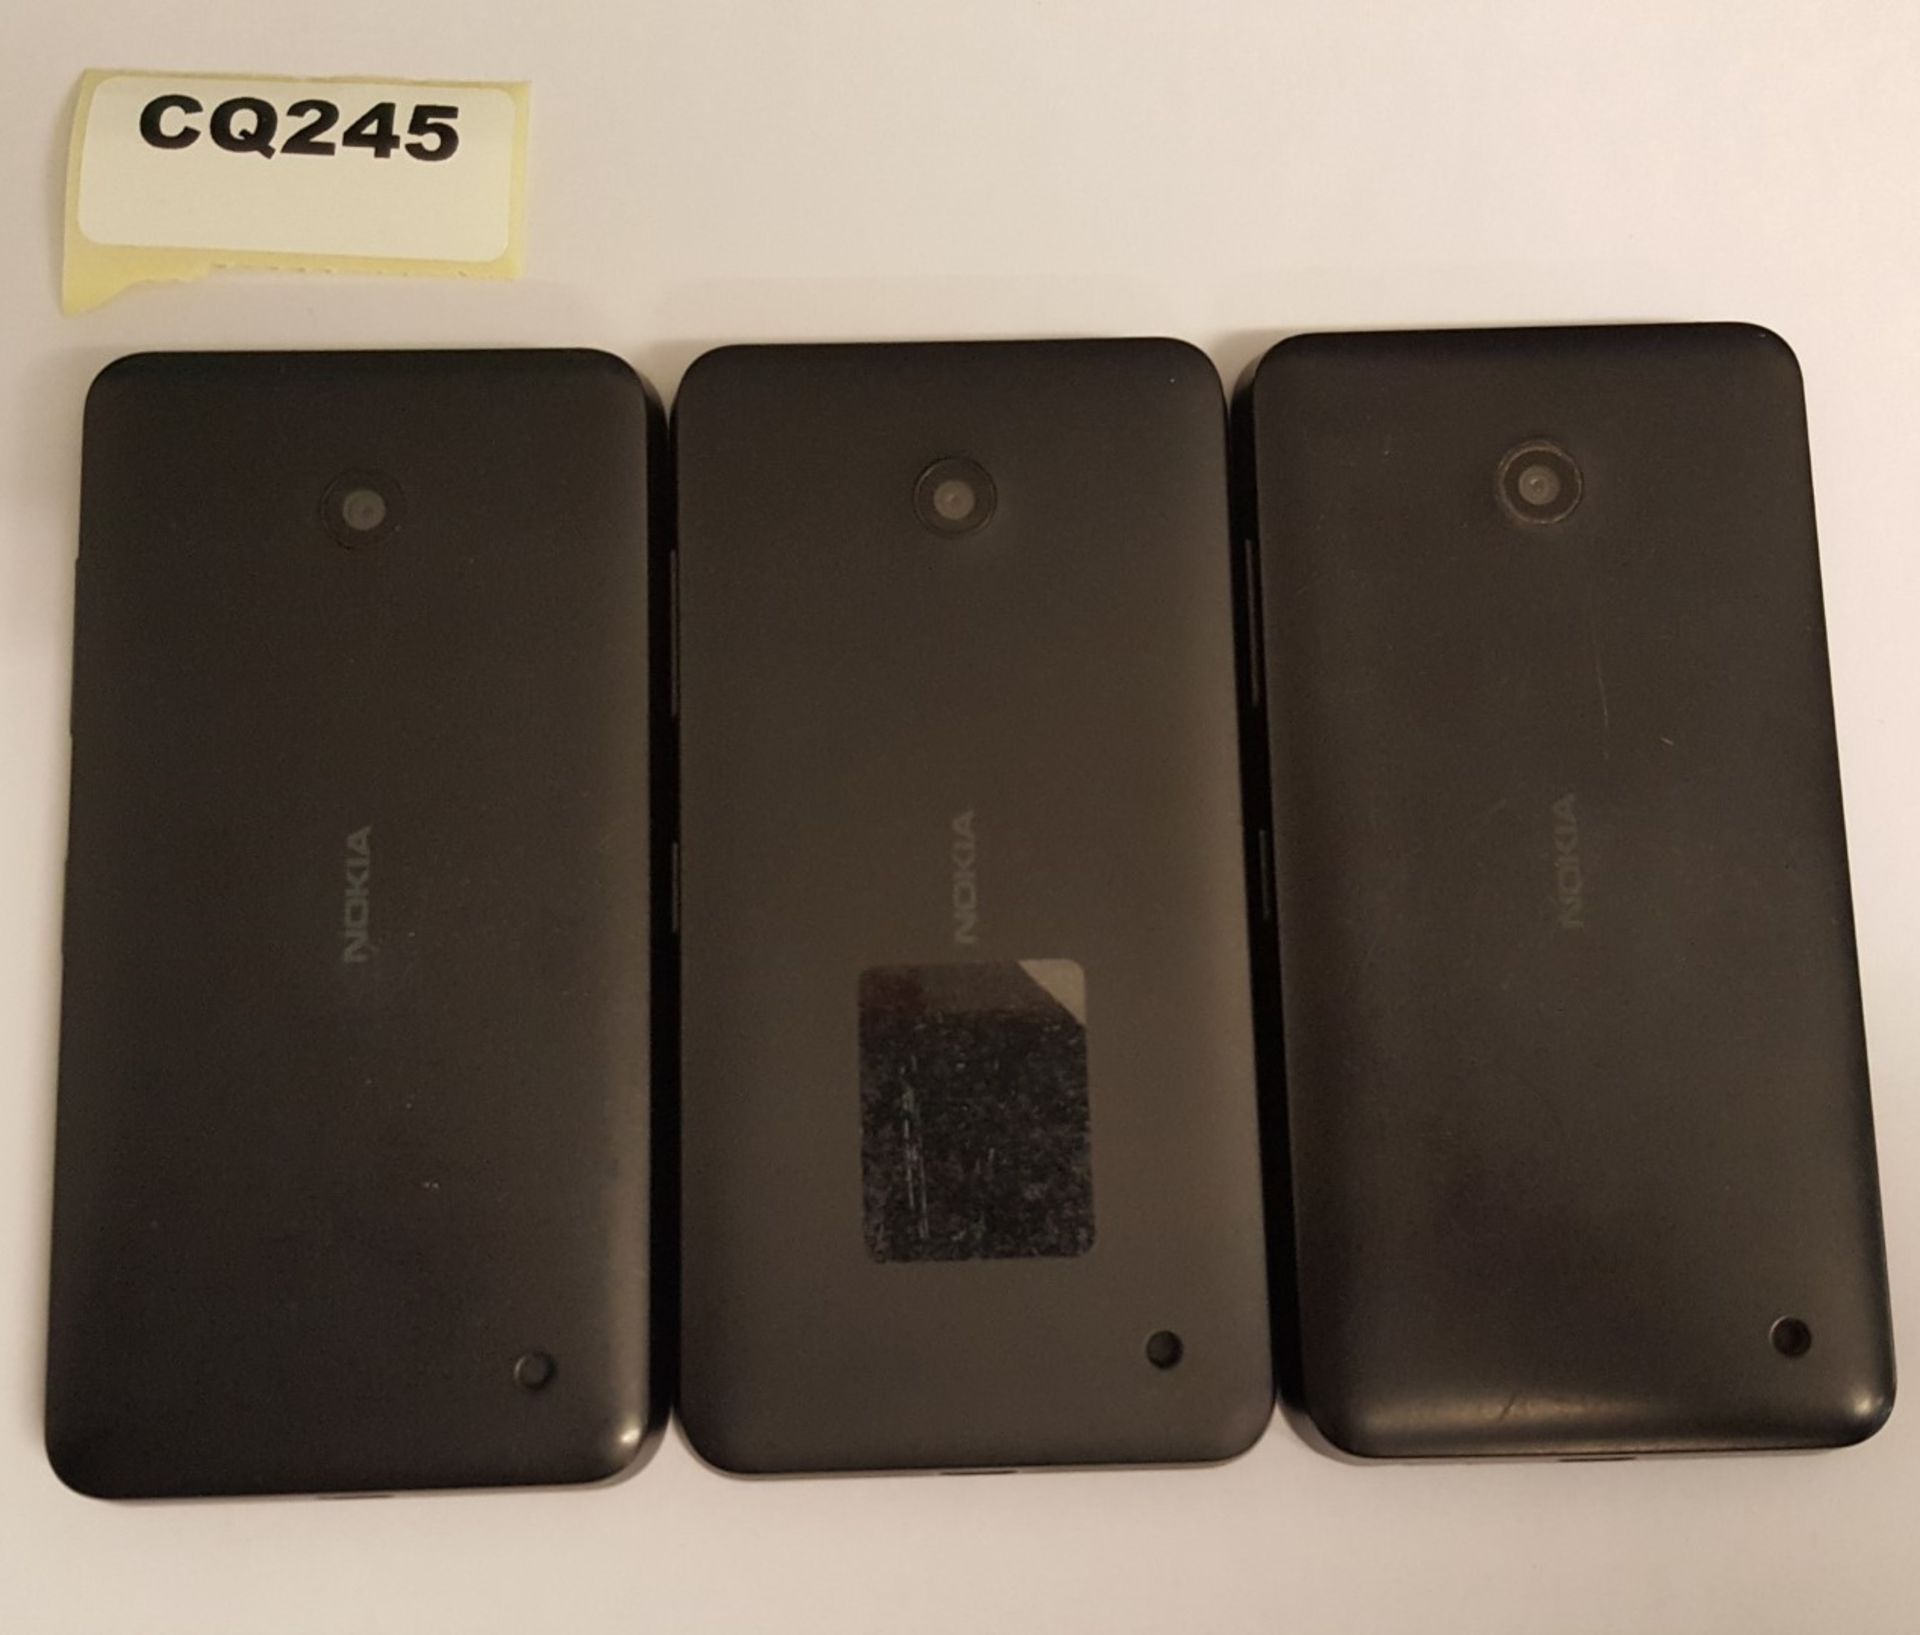 3 x Nokia Lumia 630 Black Smartphones - Ref CQ245 - Image 2 of 3